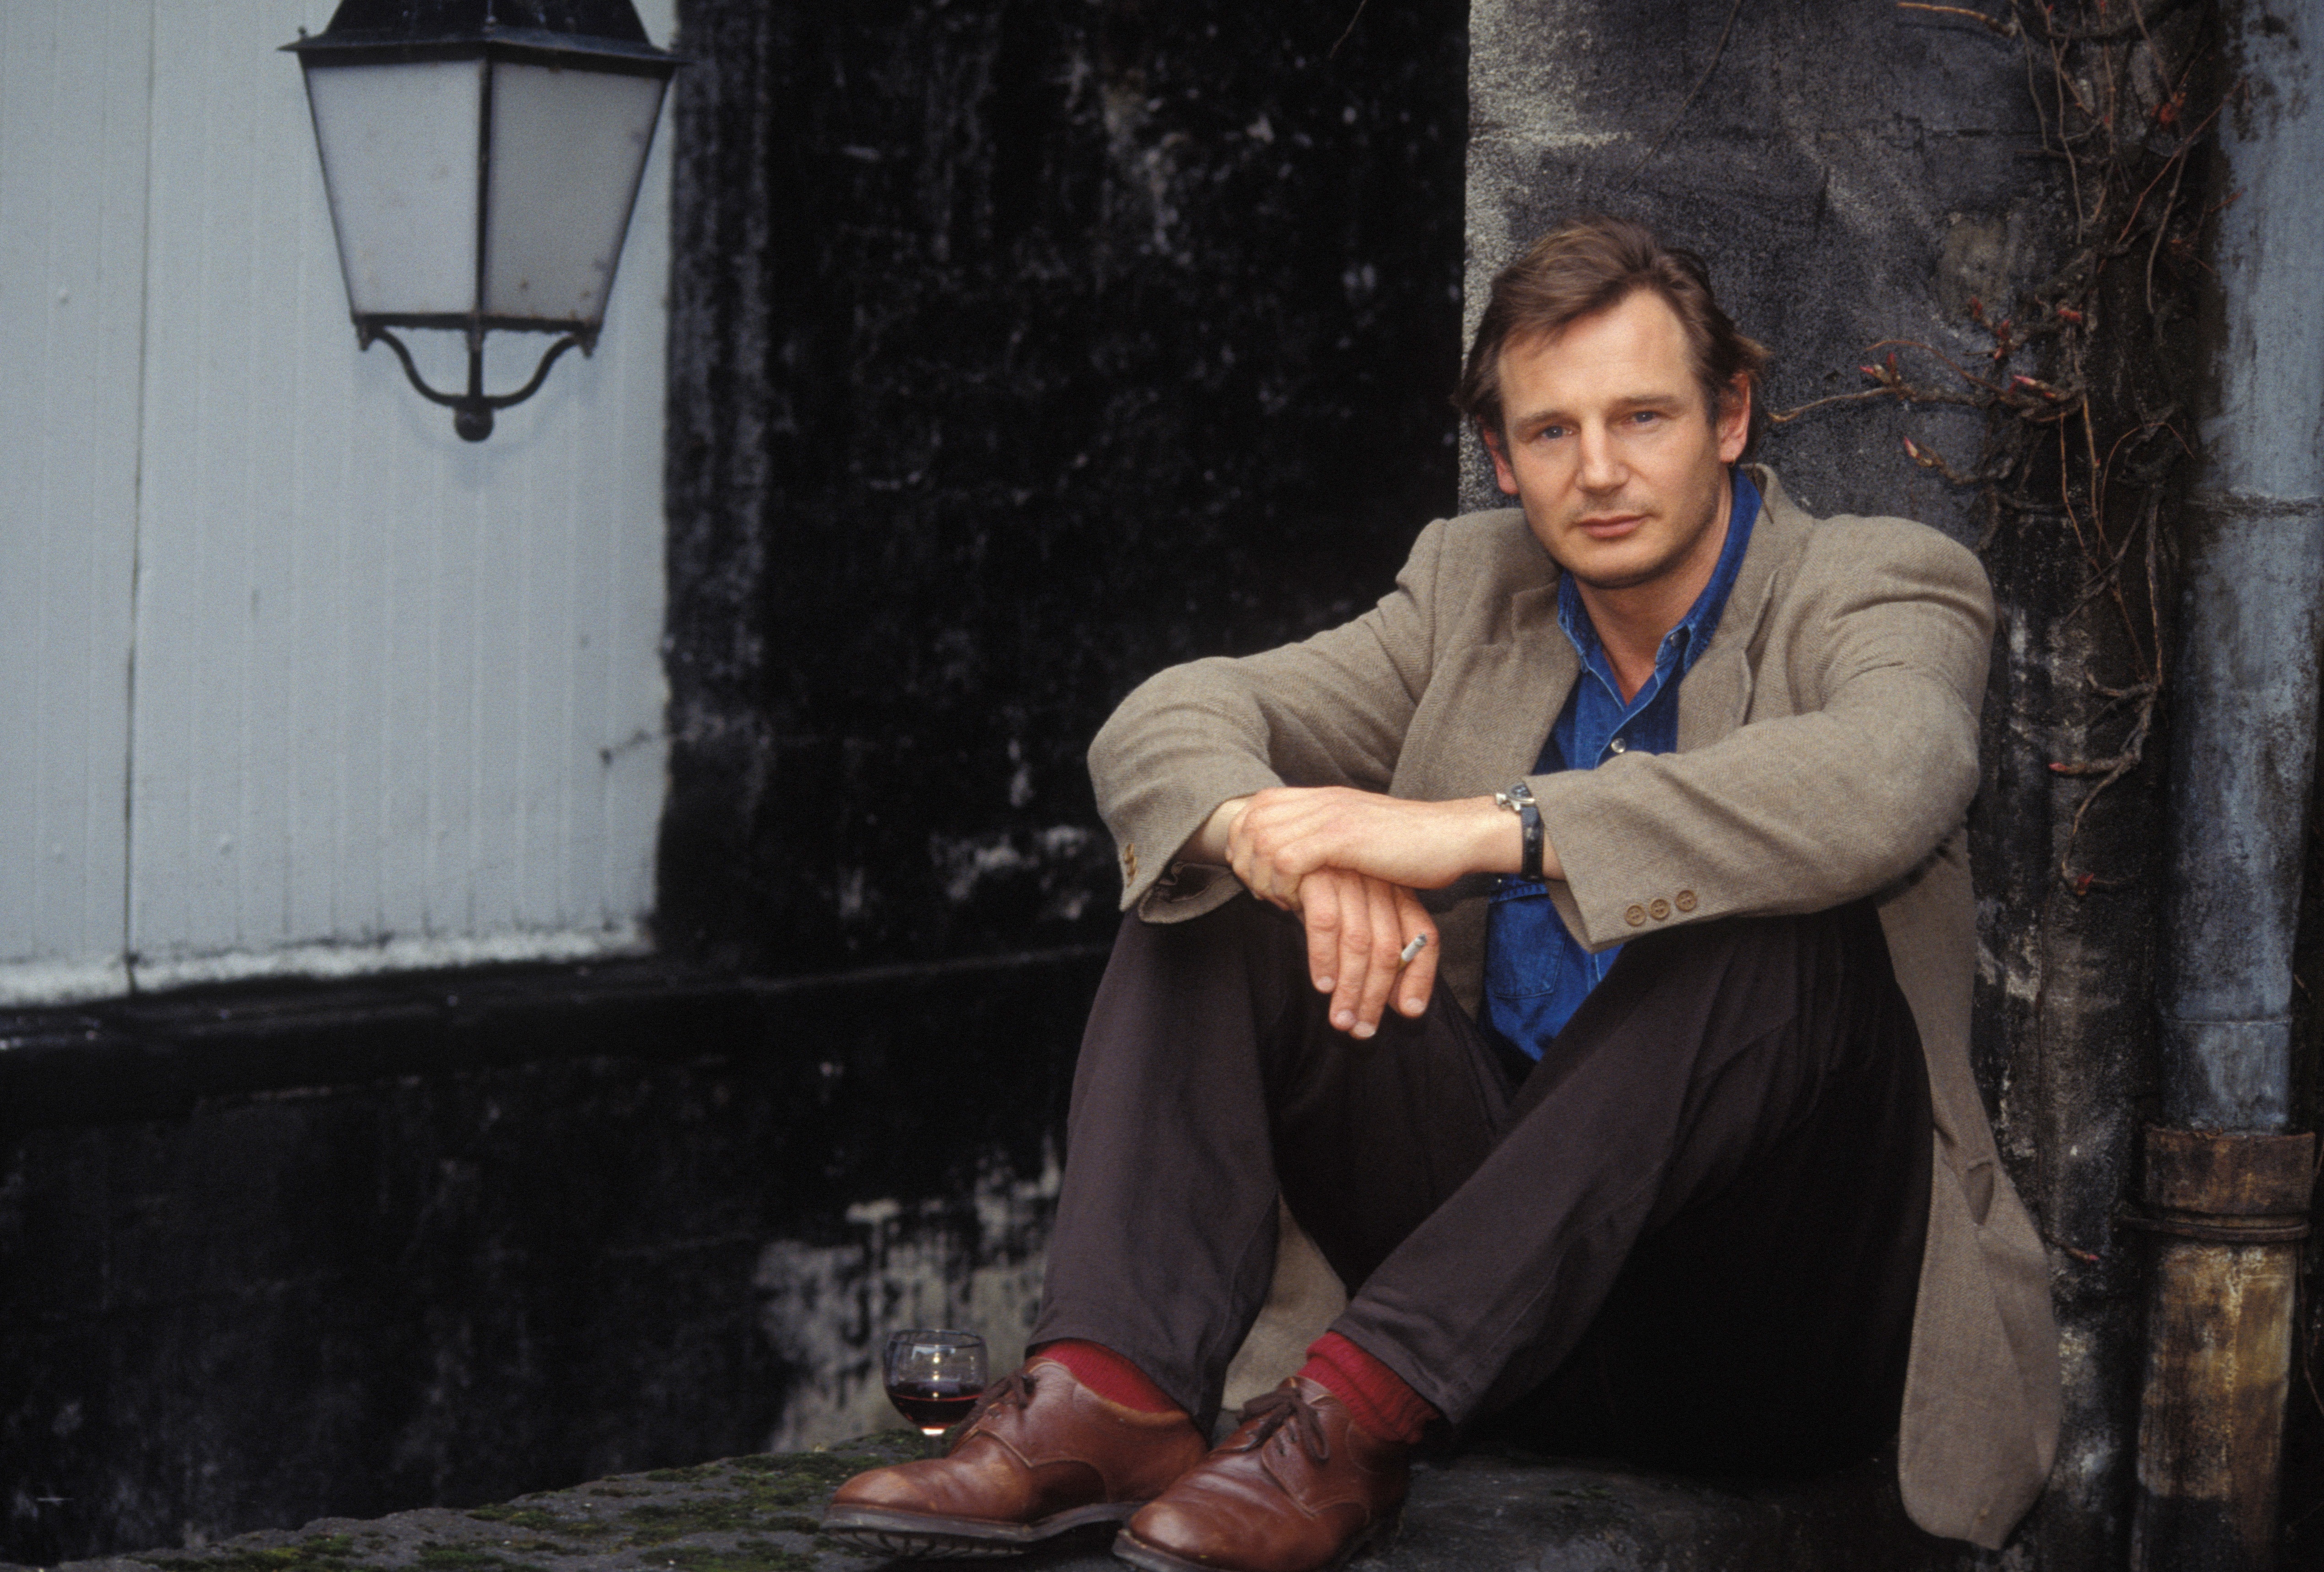 L'acteur Liam Neeson à Cognac, France en 1992 | Source : Getty Images